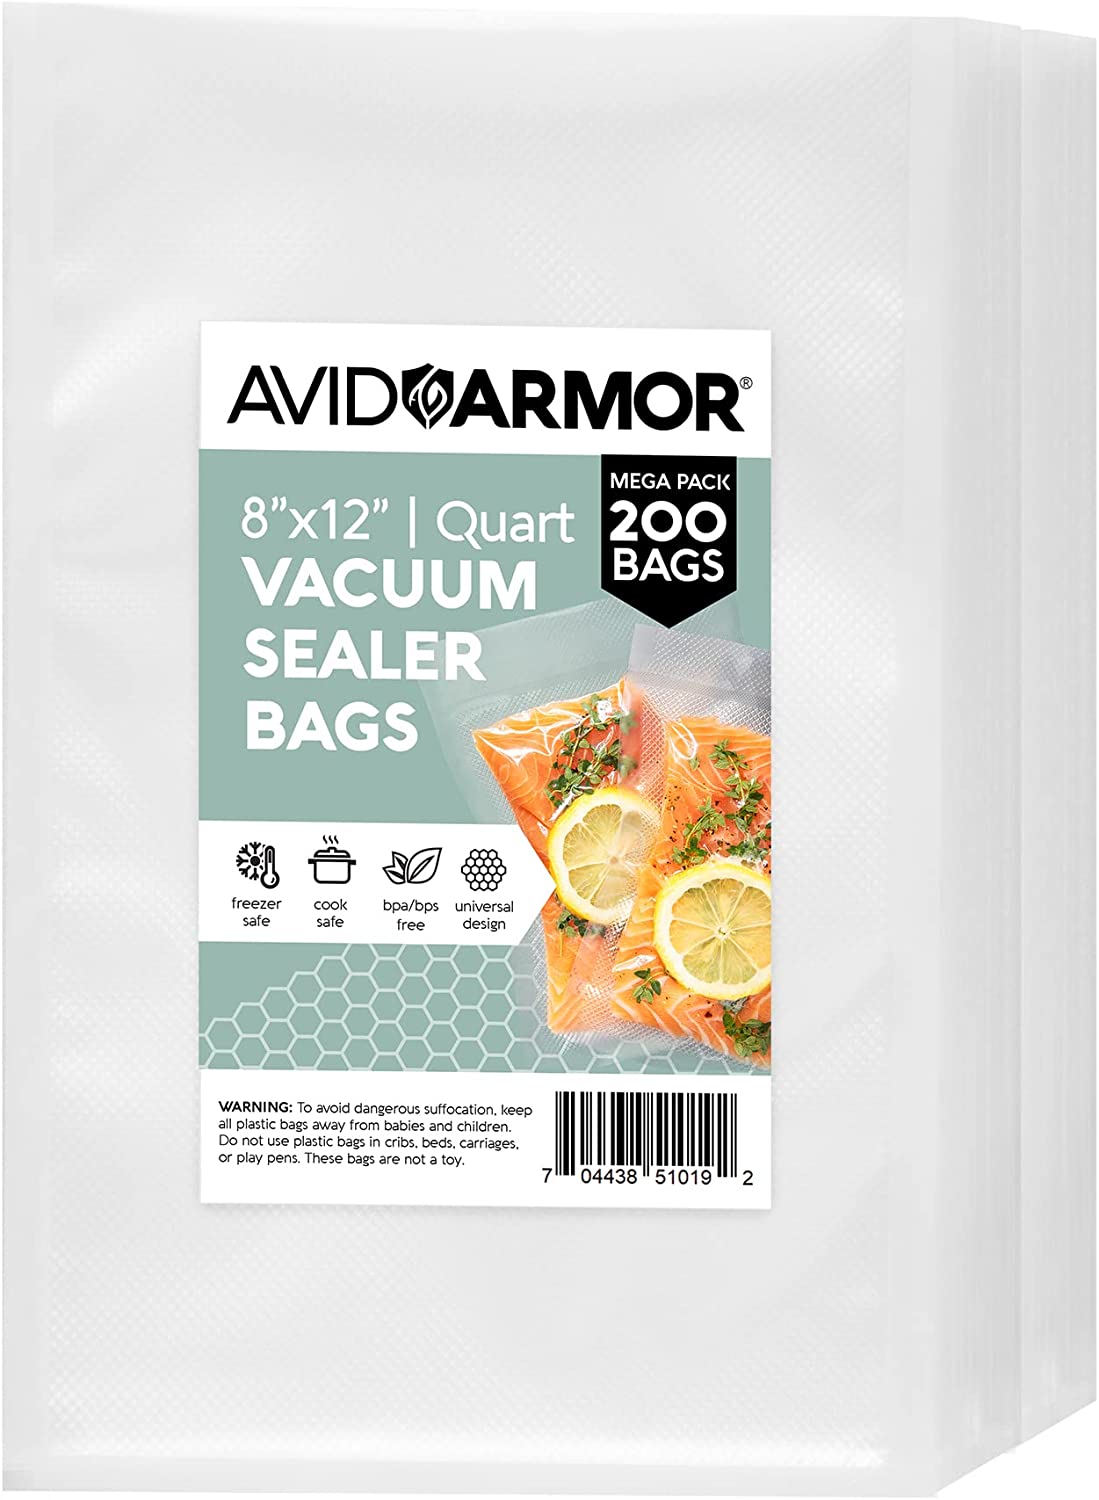 O2frepak Food Saver Vacuum Sealer Freezer Bags Rolls, 6-Pack